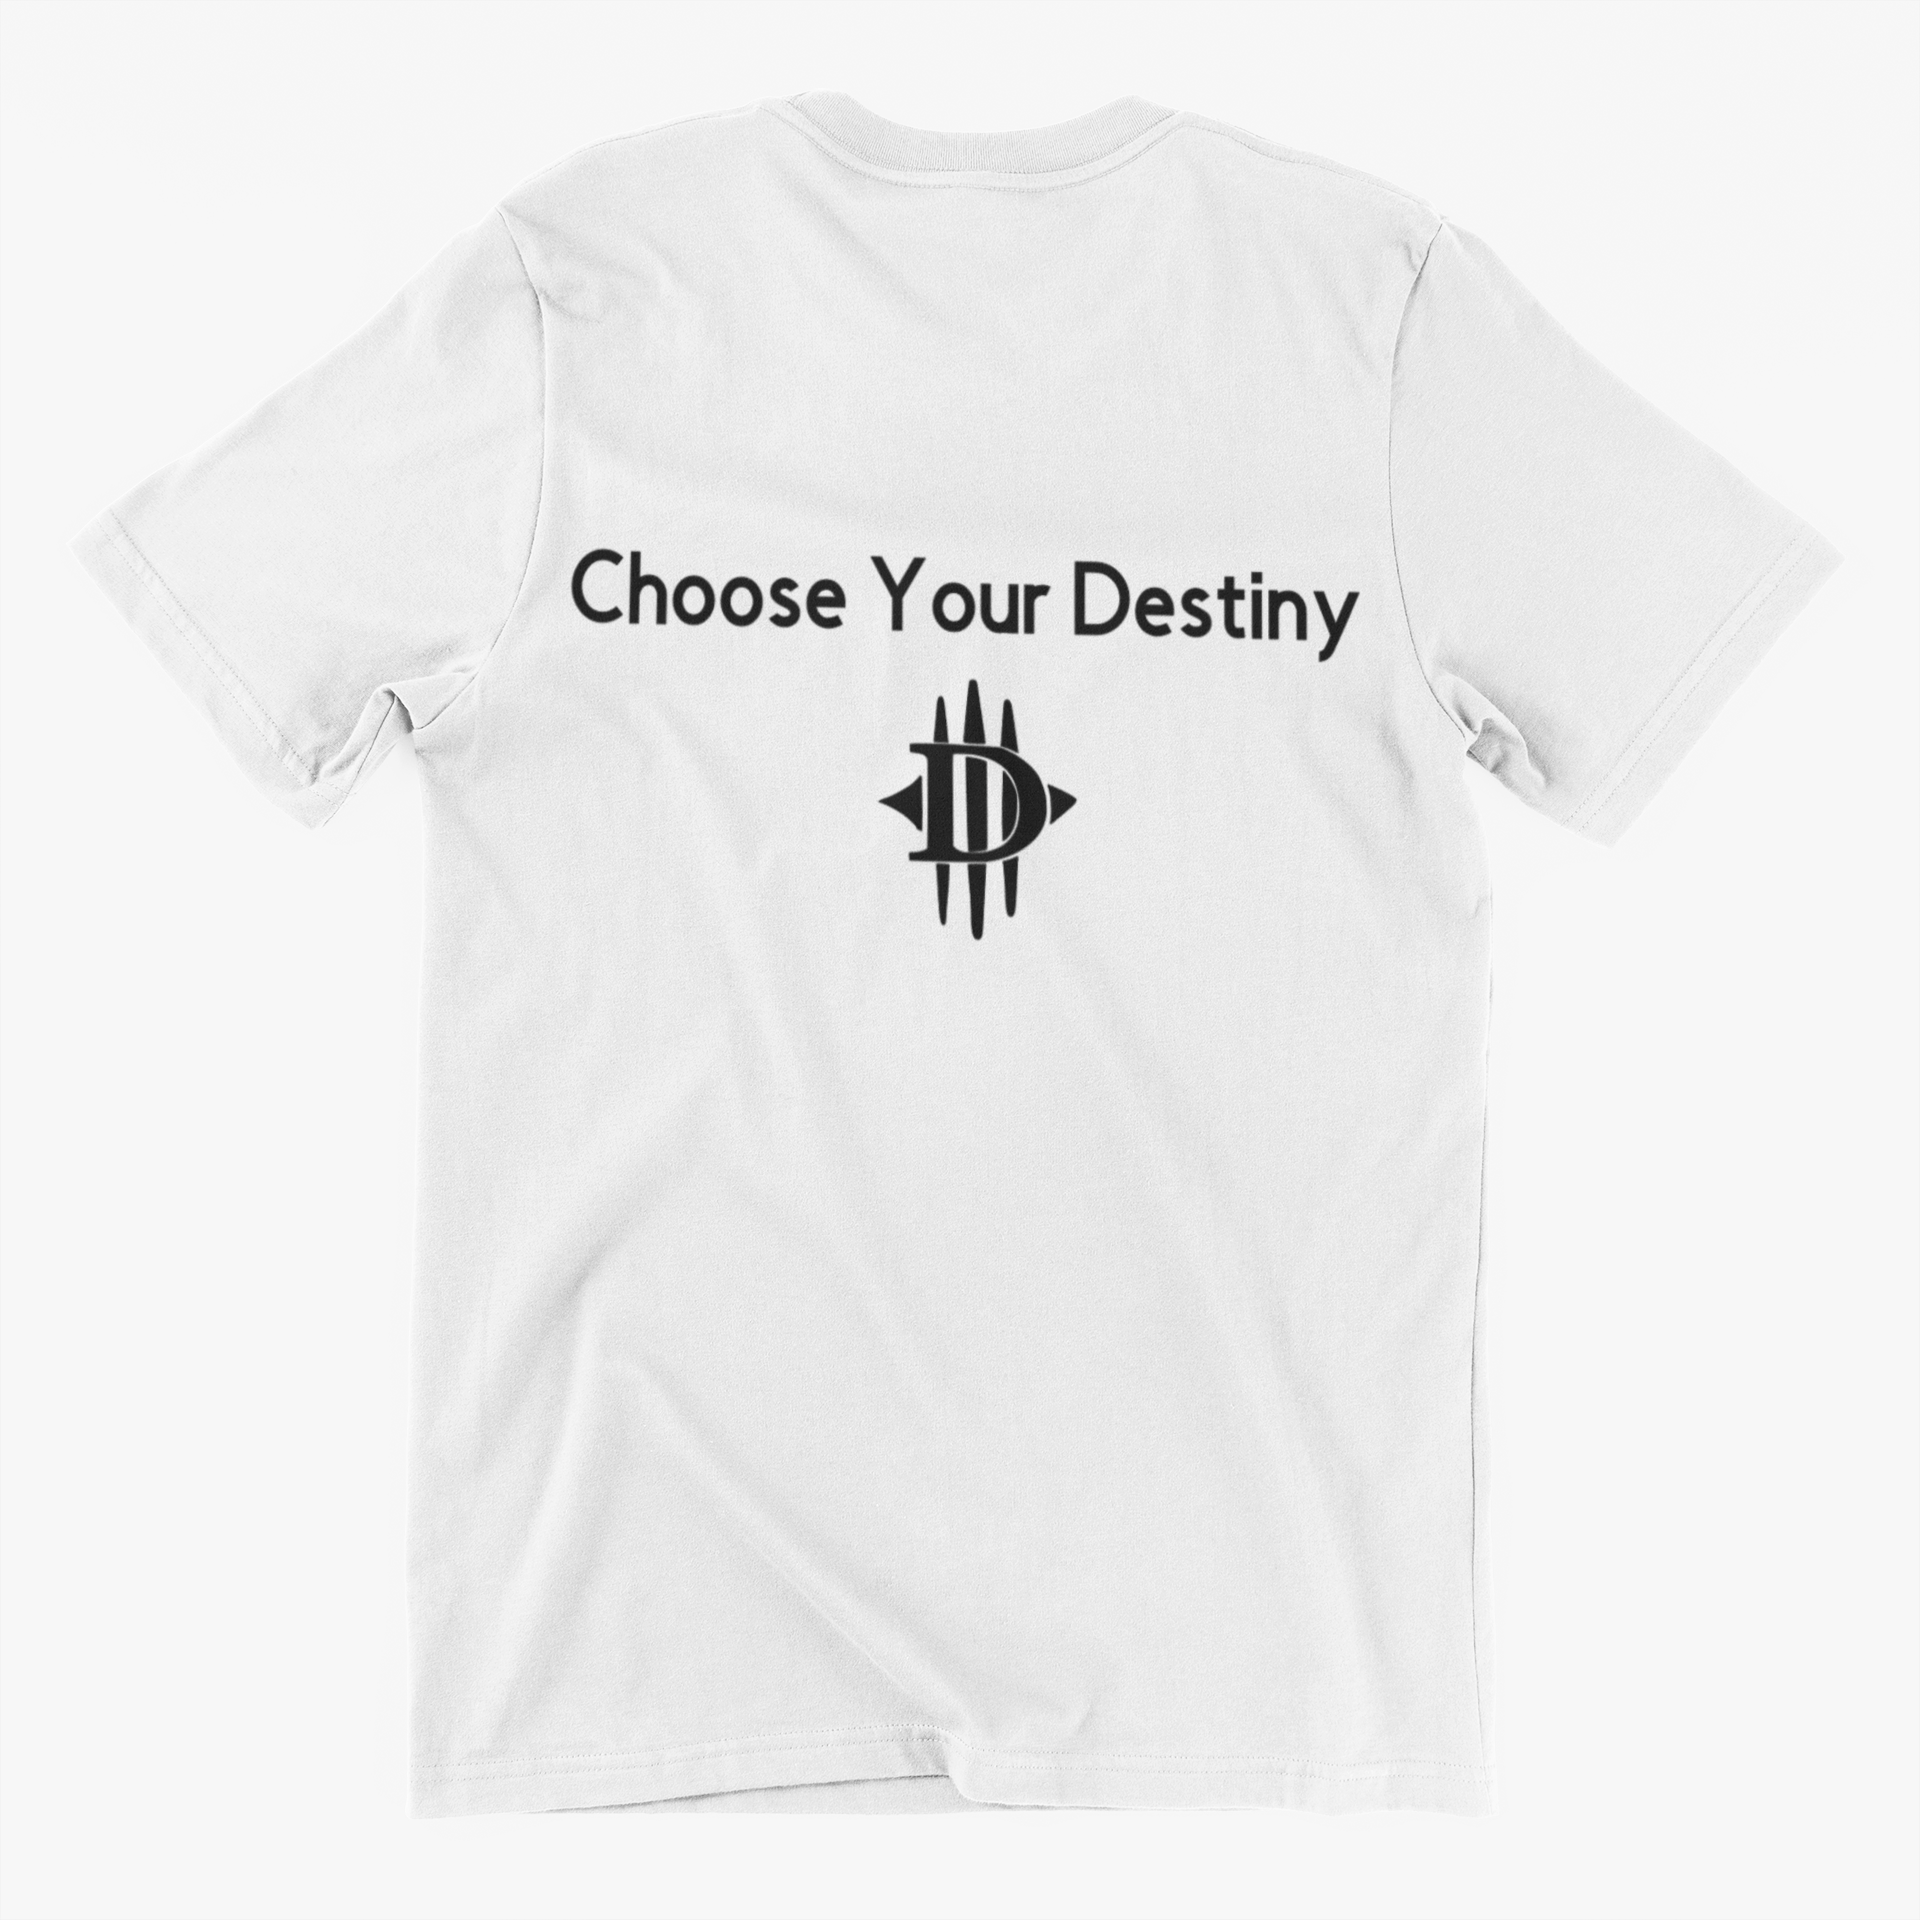 Choose Your Destiny T-shirt